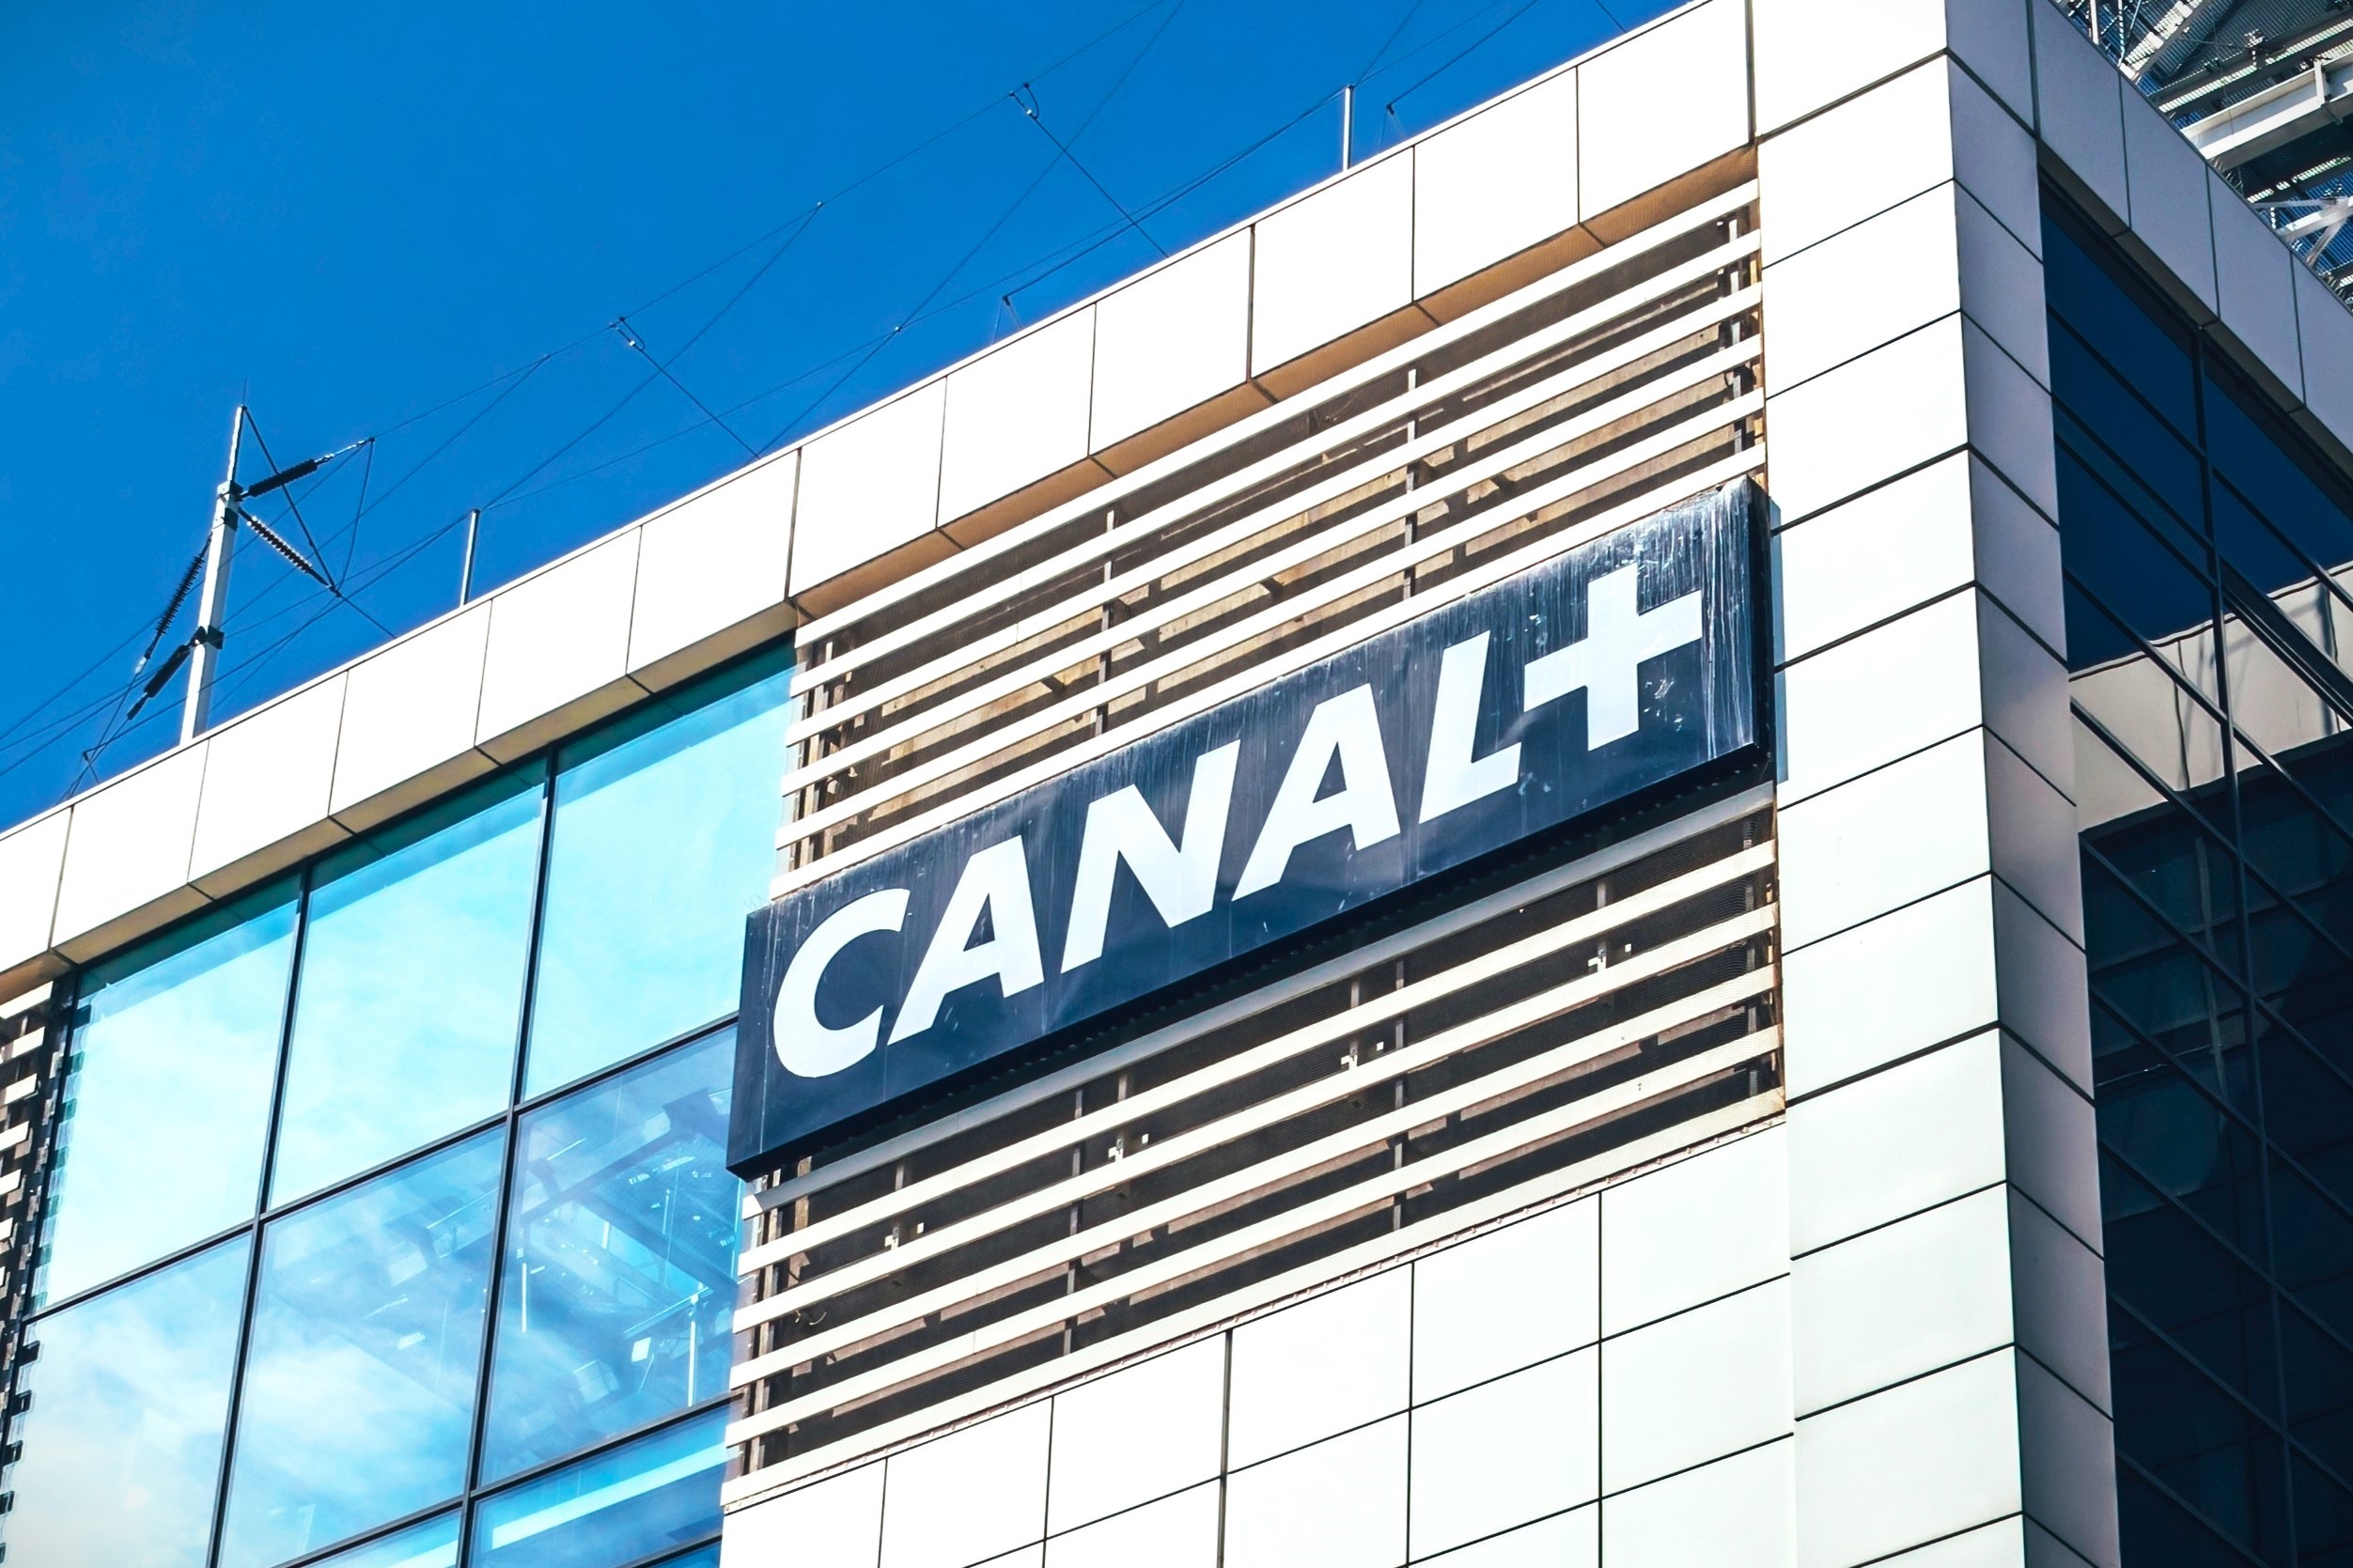 Démarchage téléphonique : Canal+ a abusé, voilà le groupe sanctionné de 600 000 euros d'amende